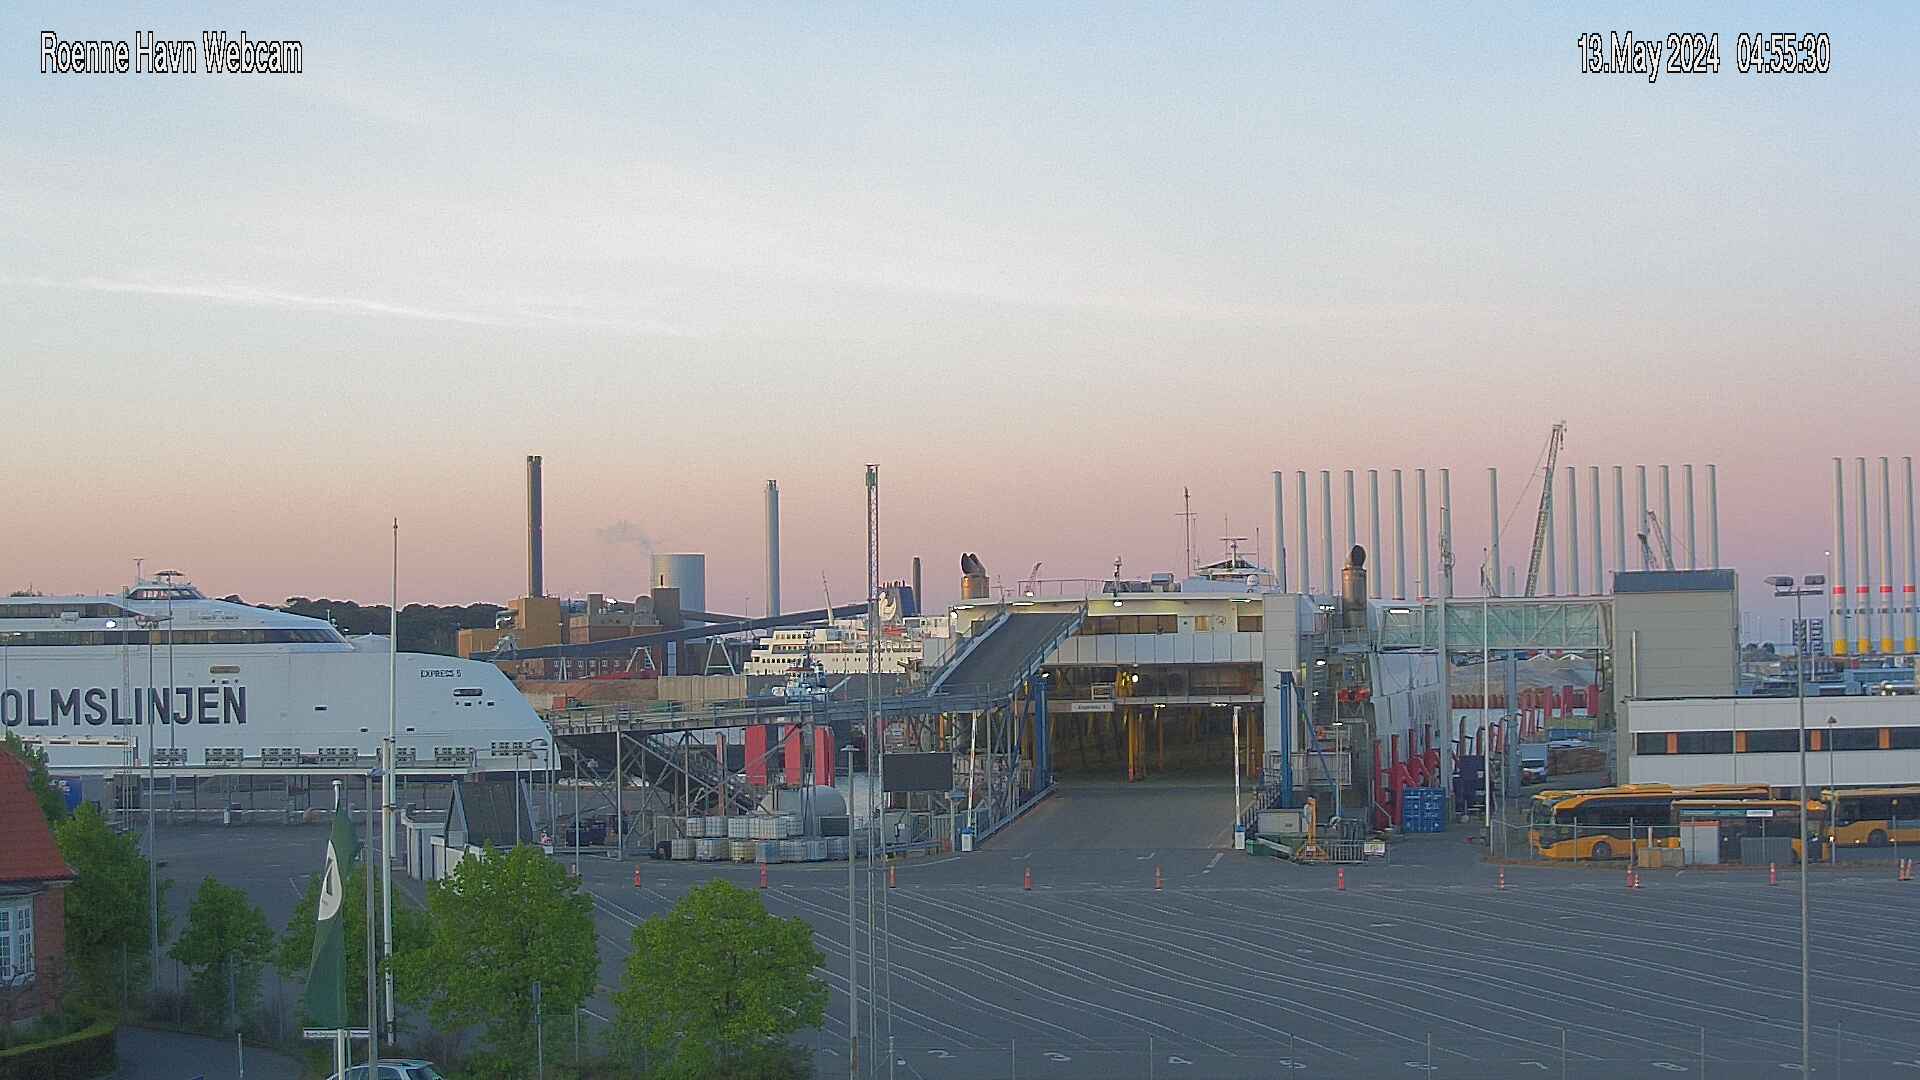 Rønne (Bornholm) Fre. 04:55